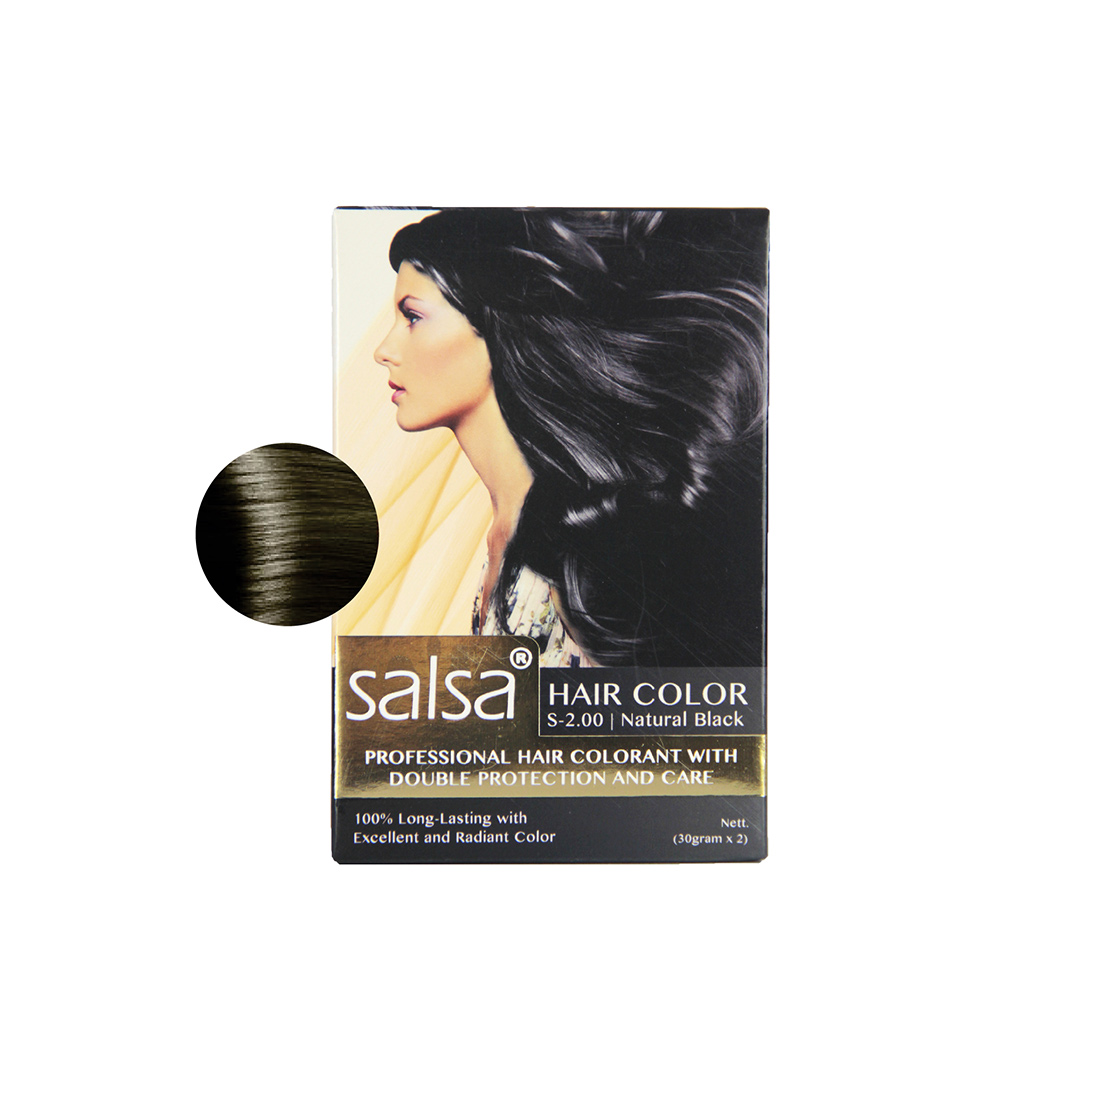 SALSA Hair Color Pewarna rambut dengan double protection melindungi rambut ...